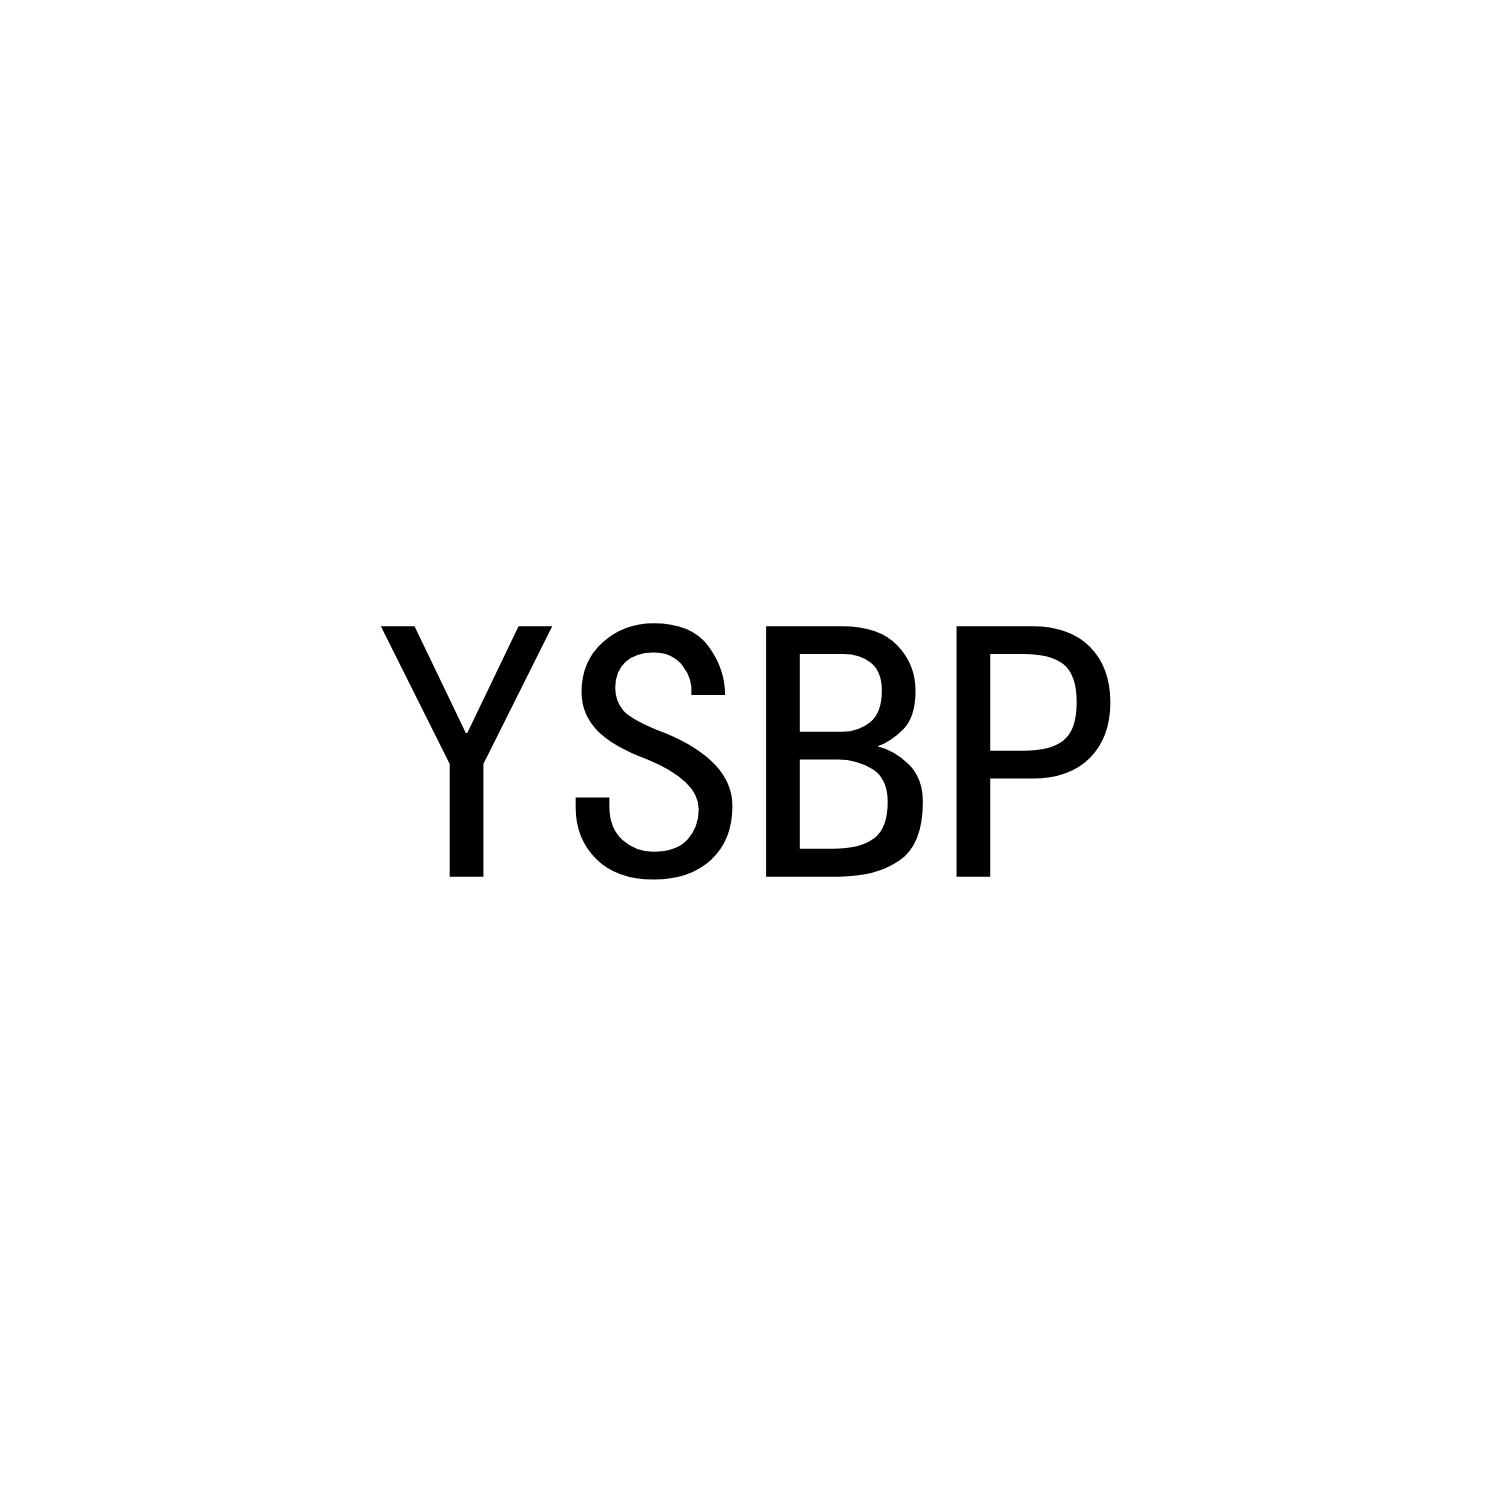 YSBP